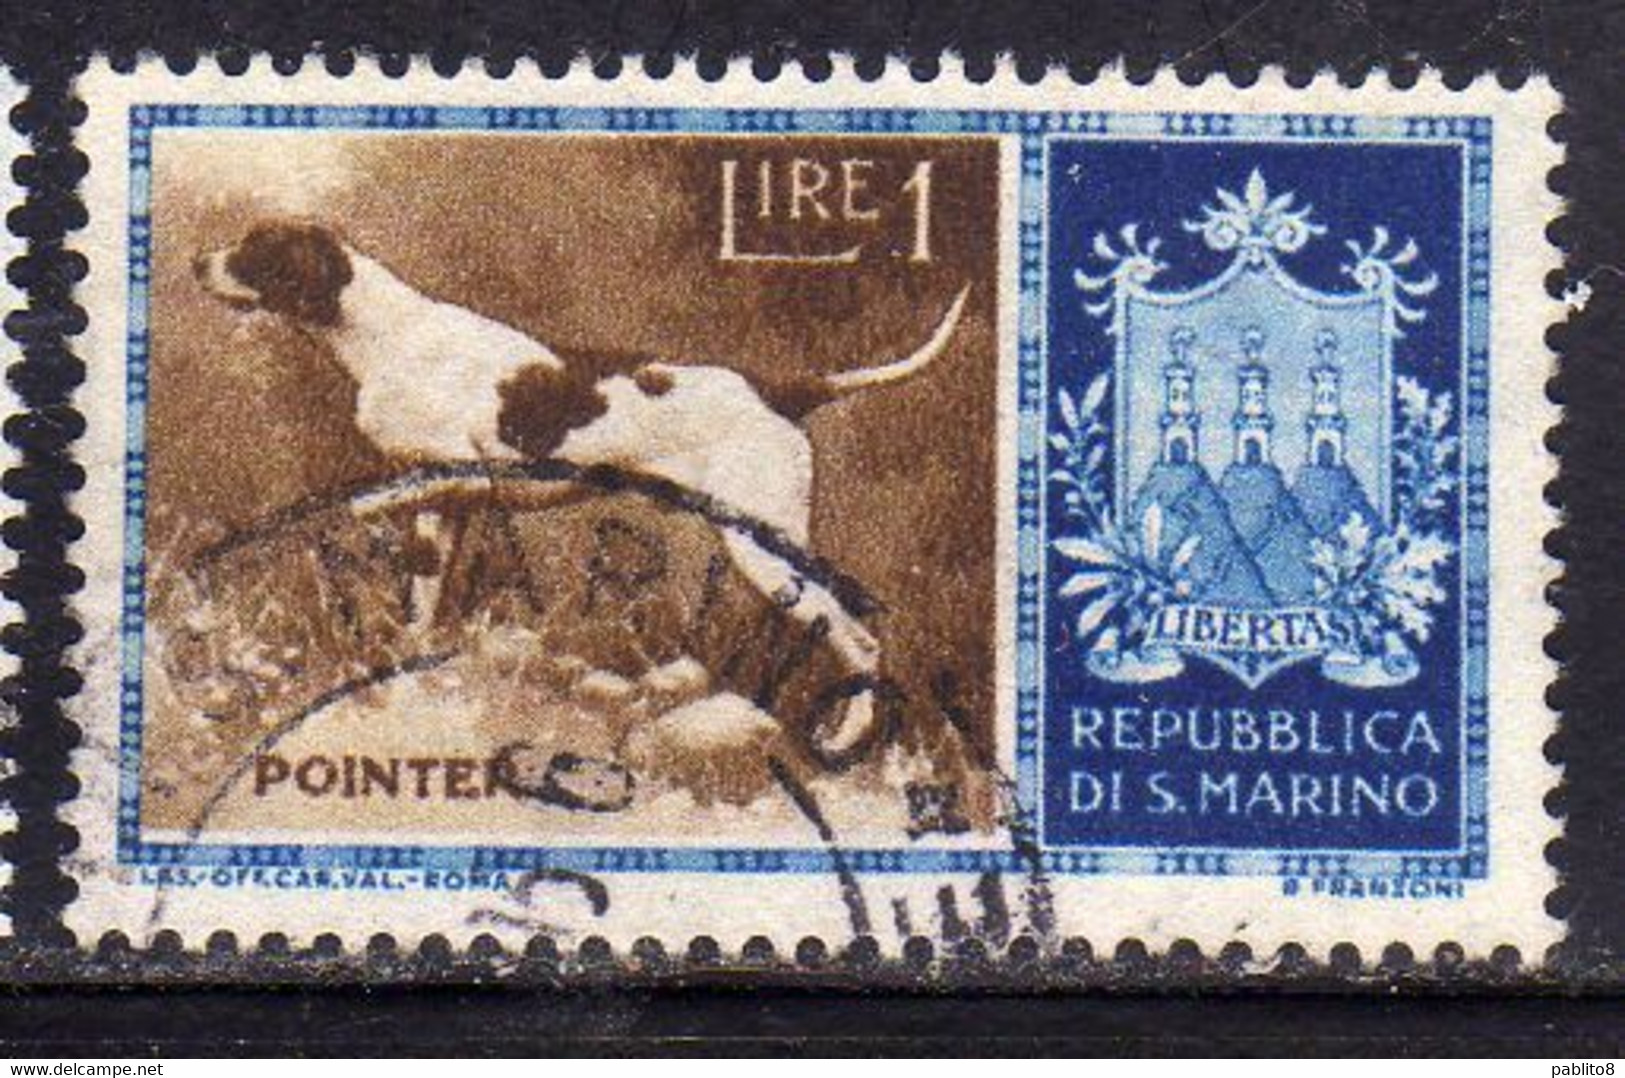 REPUBBLICA DI SAN MARINO 1956 CANI DOGS POINTER LIRE 1 USATO USED OBLITERE' - Usati